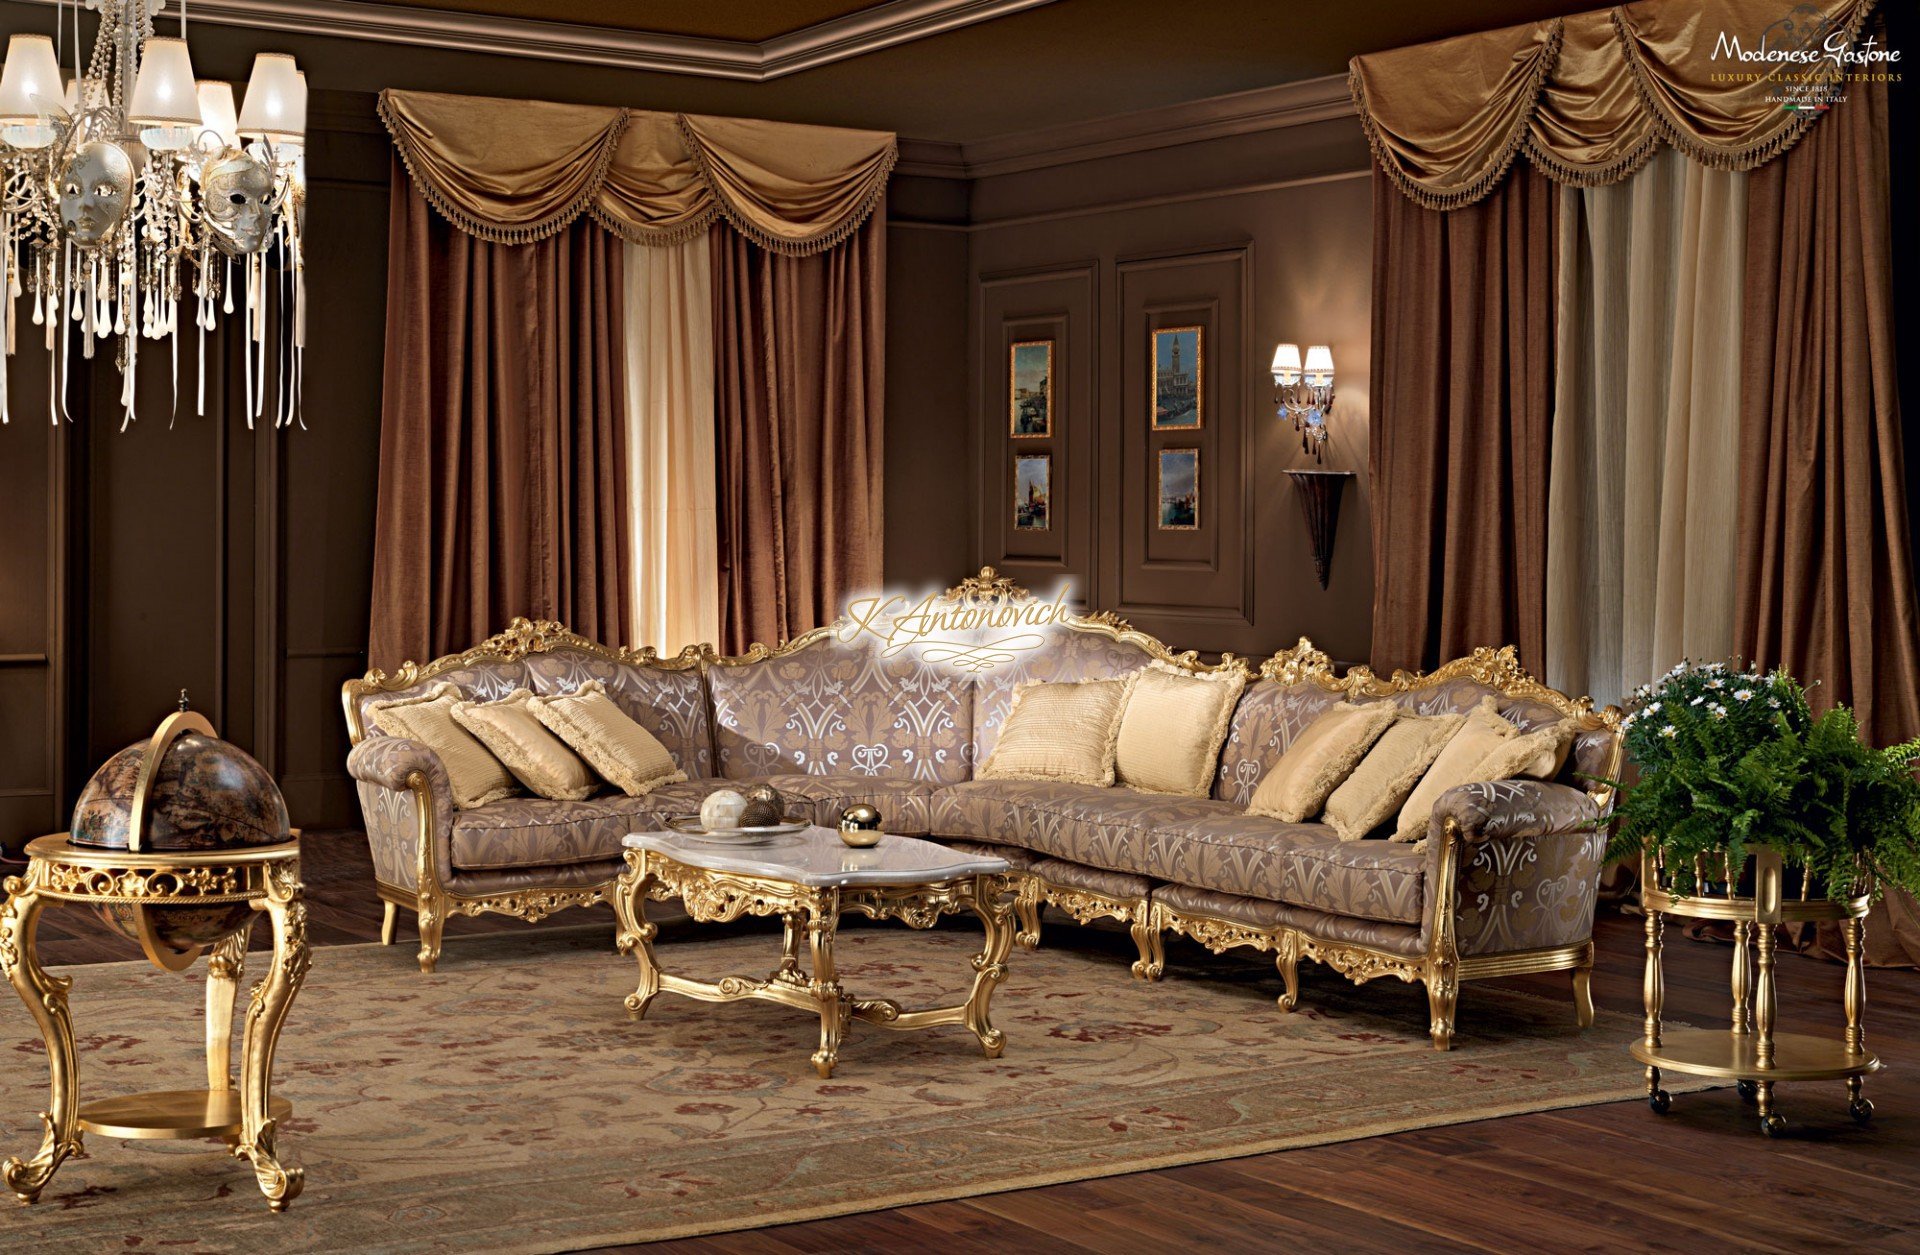 modenese gastone classic furniture